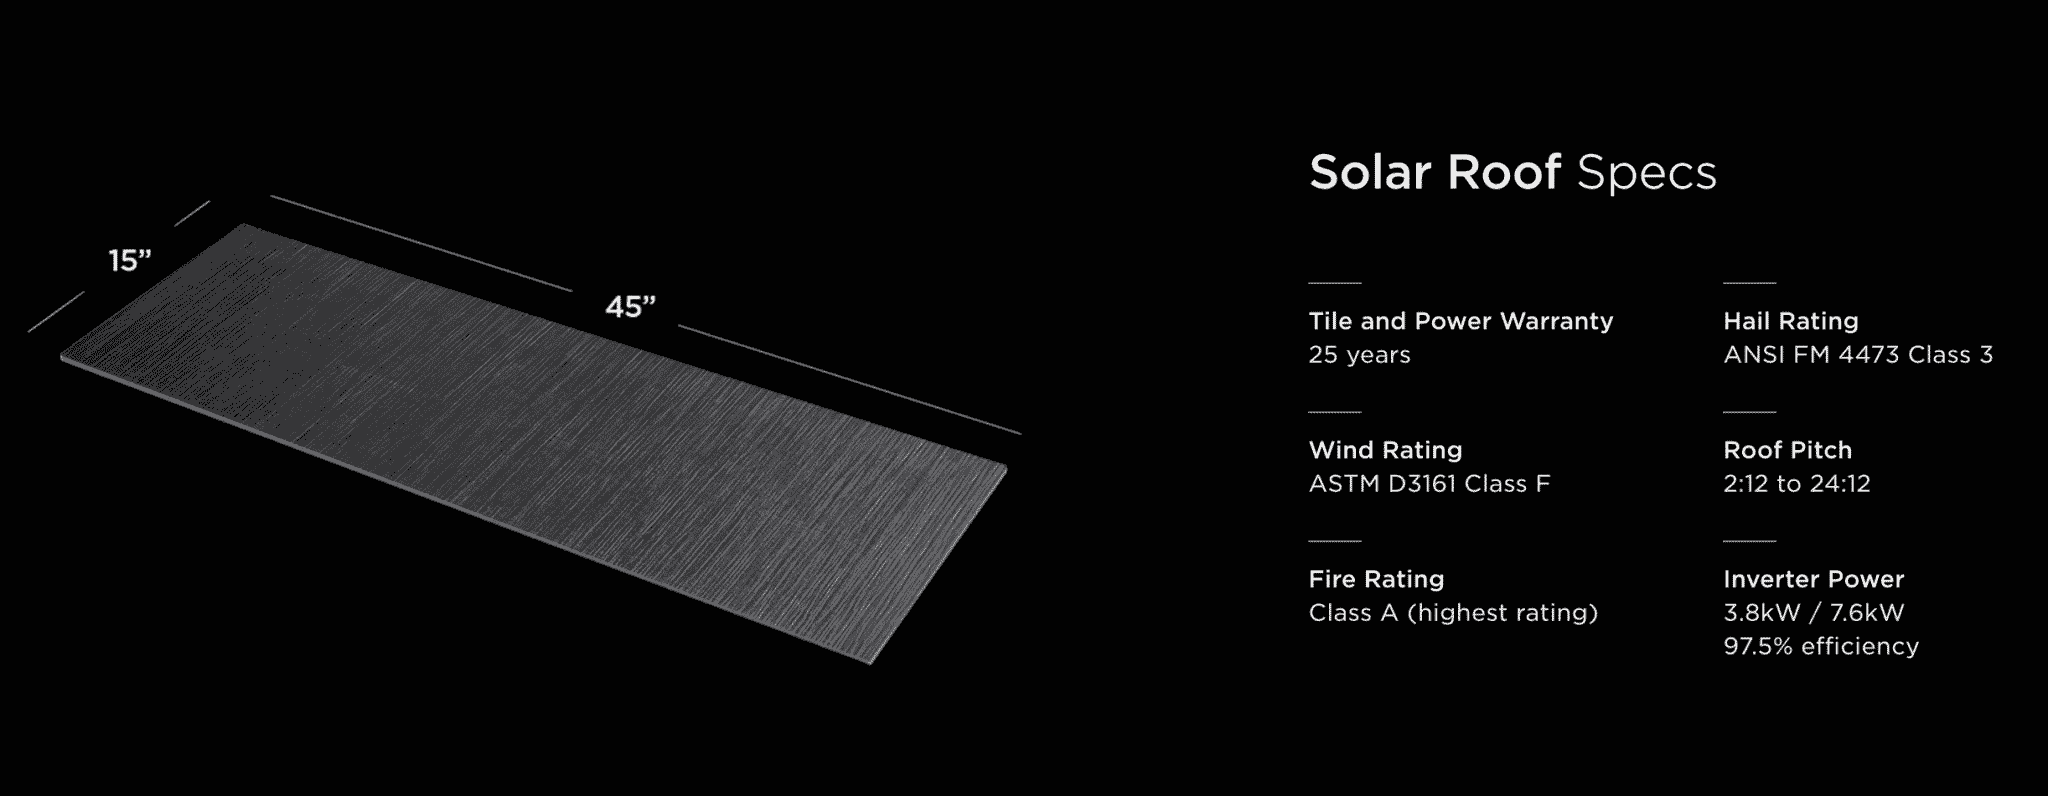 Solar Roof Spec